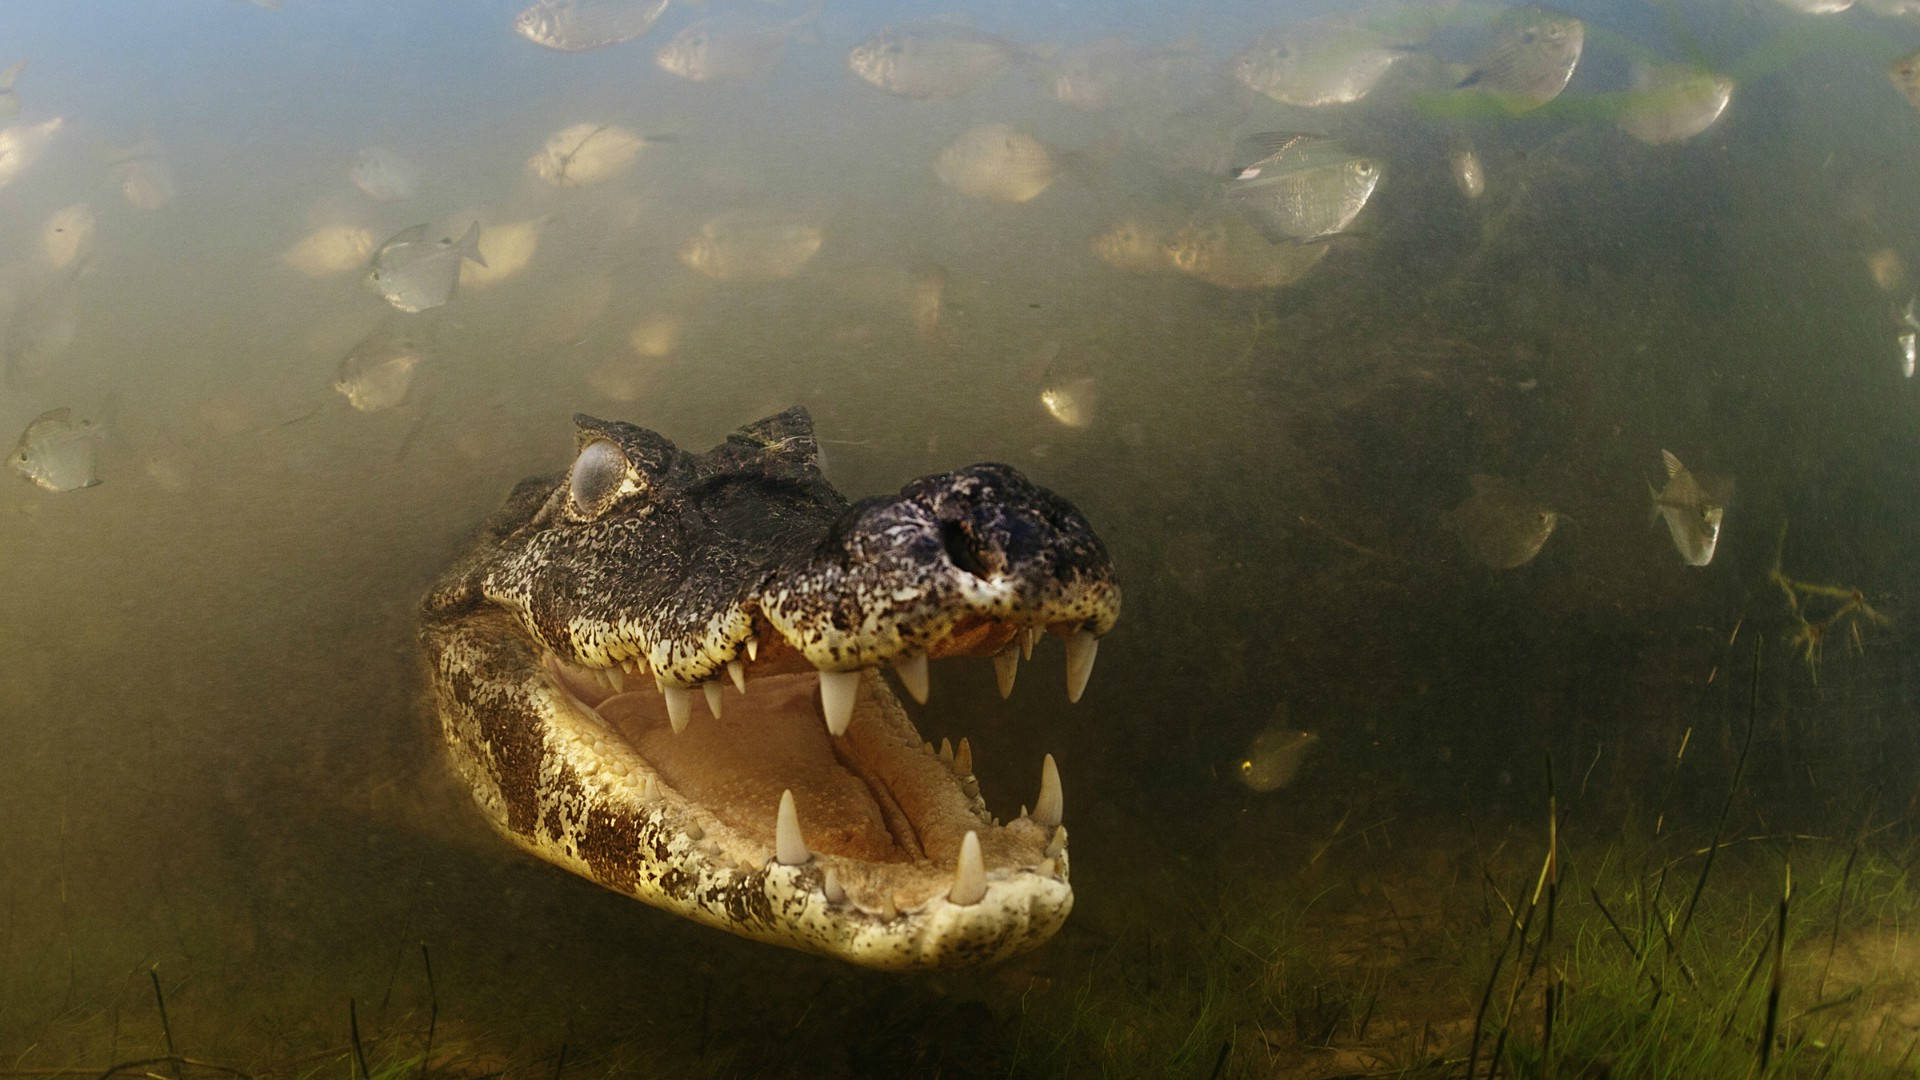 Underwater Black Swamp Alligator